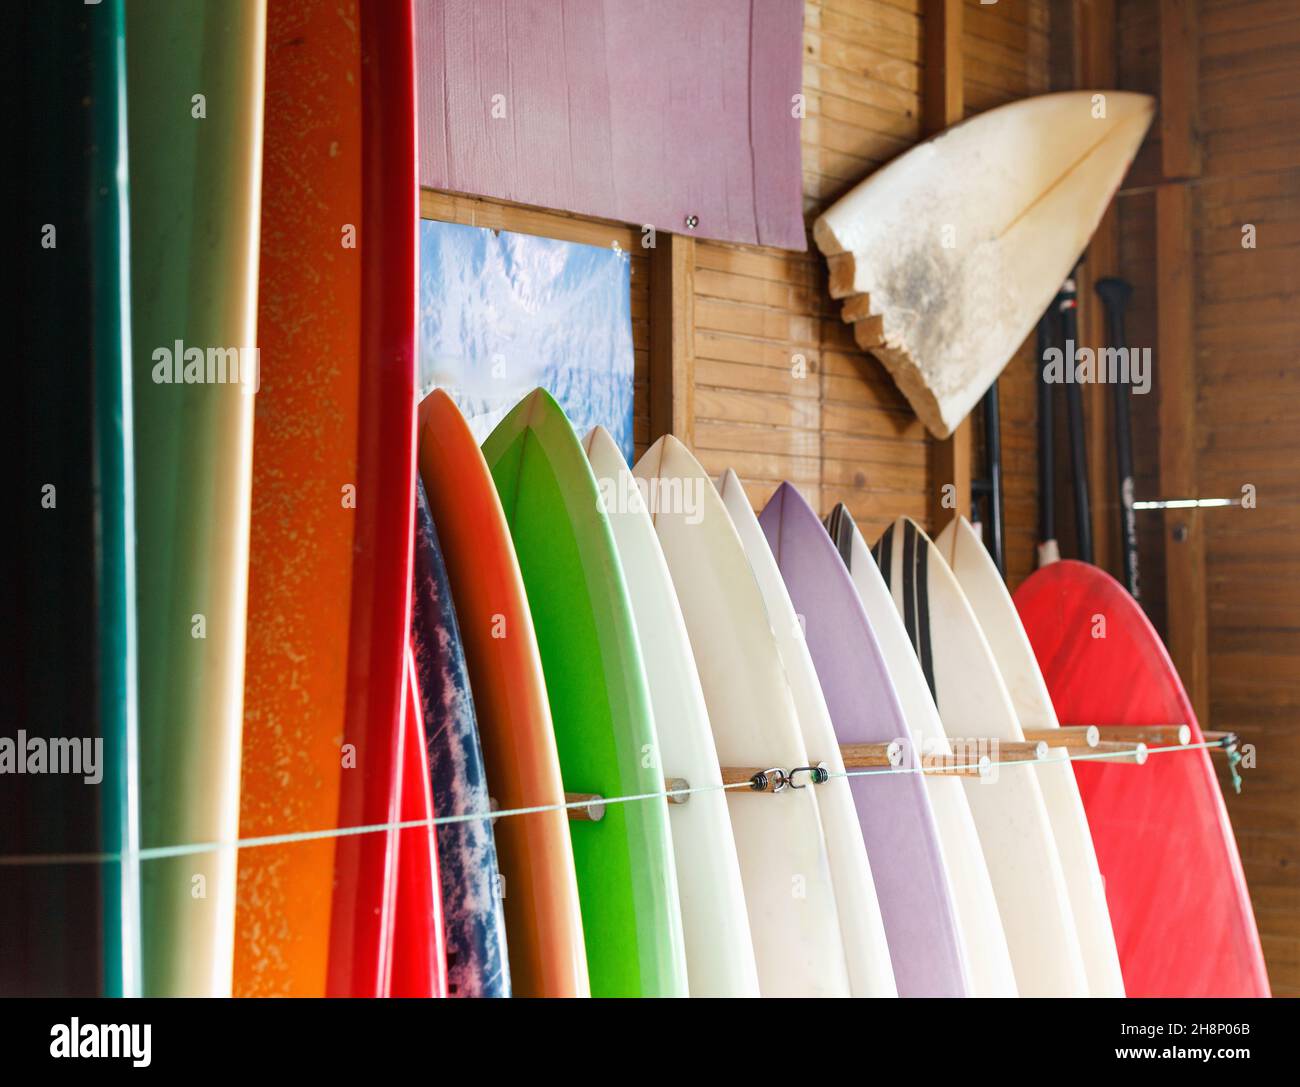 Boards zum Surfen und Stand Up Paddle Boarding können im Surfclub gemietet werden Stockfoto